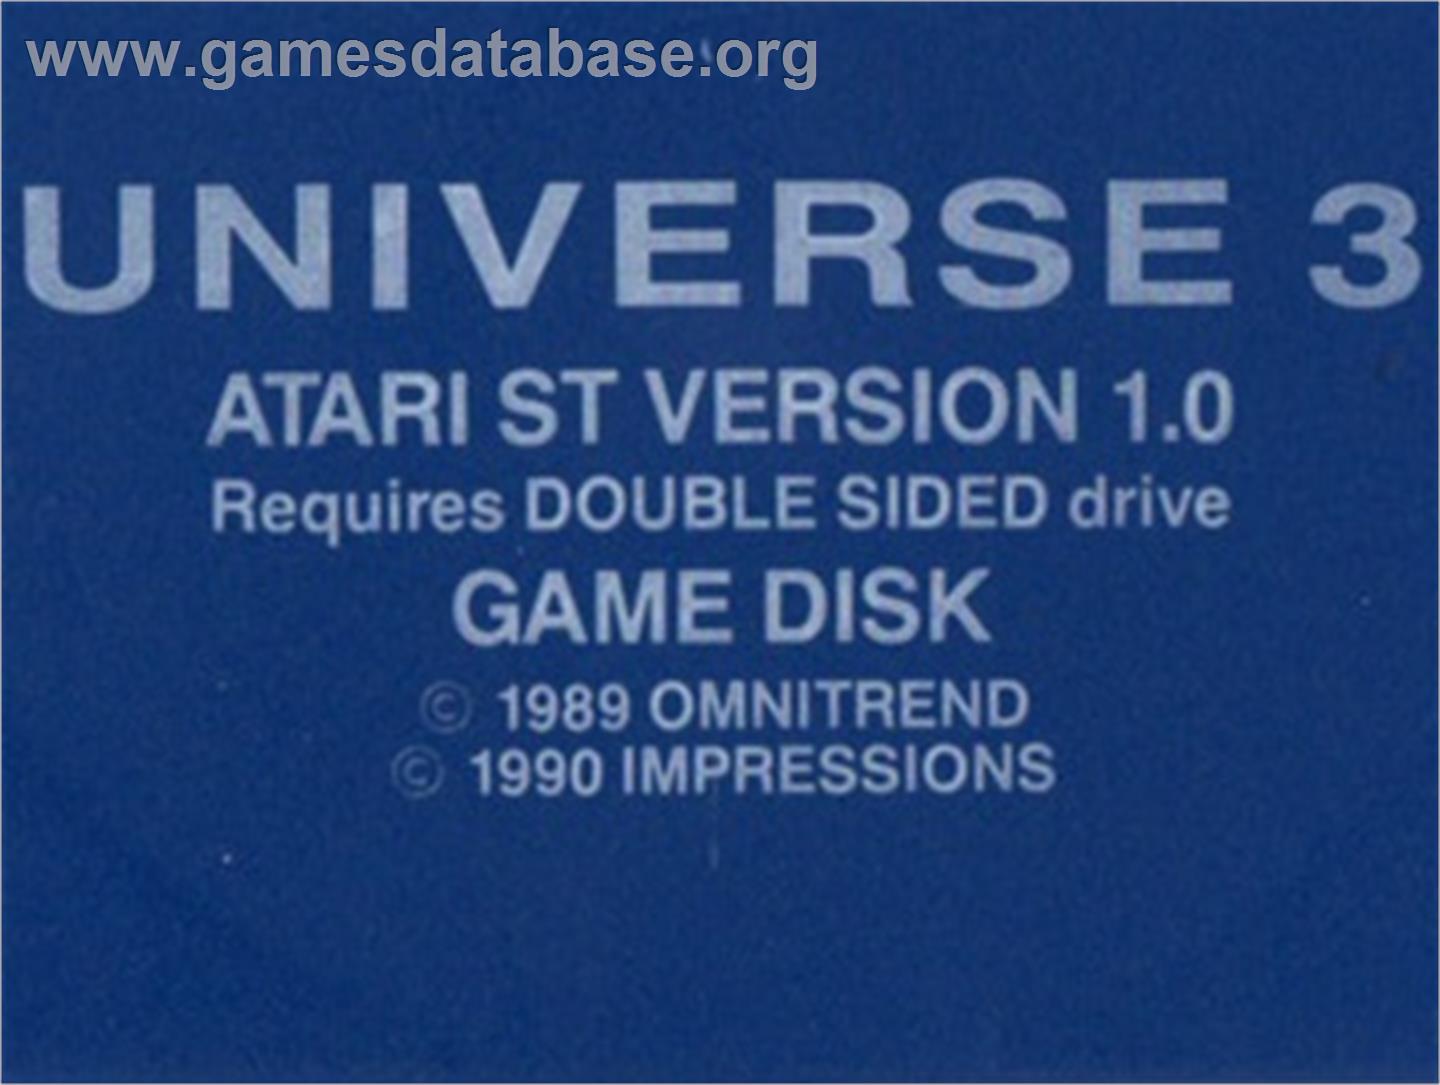 Universe 3 - Atari ST - Artwork - Cartridge Top